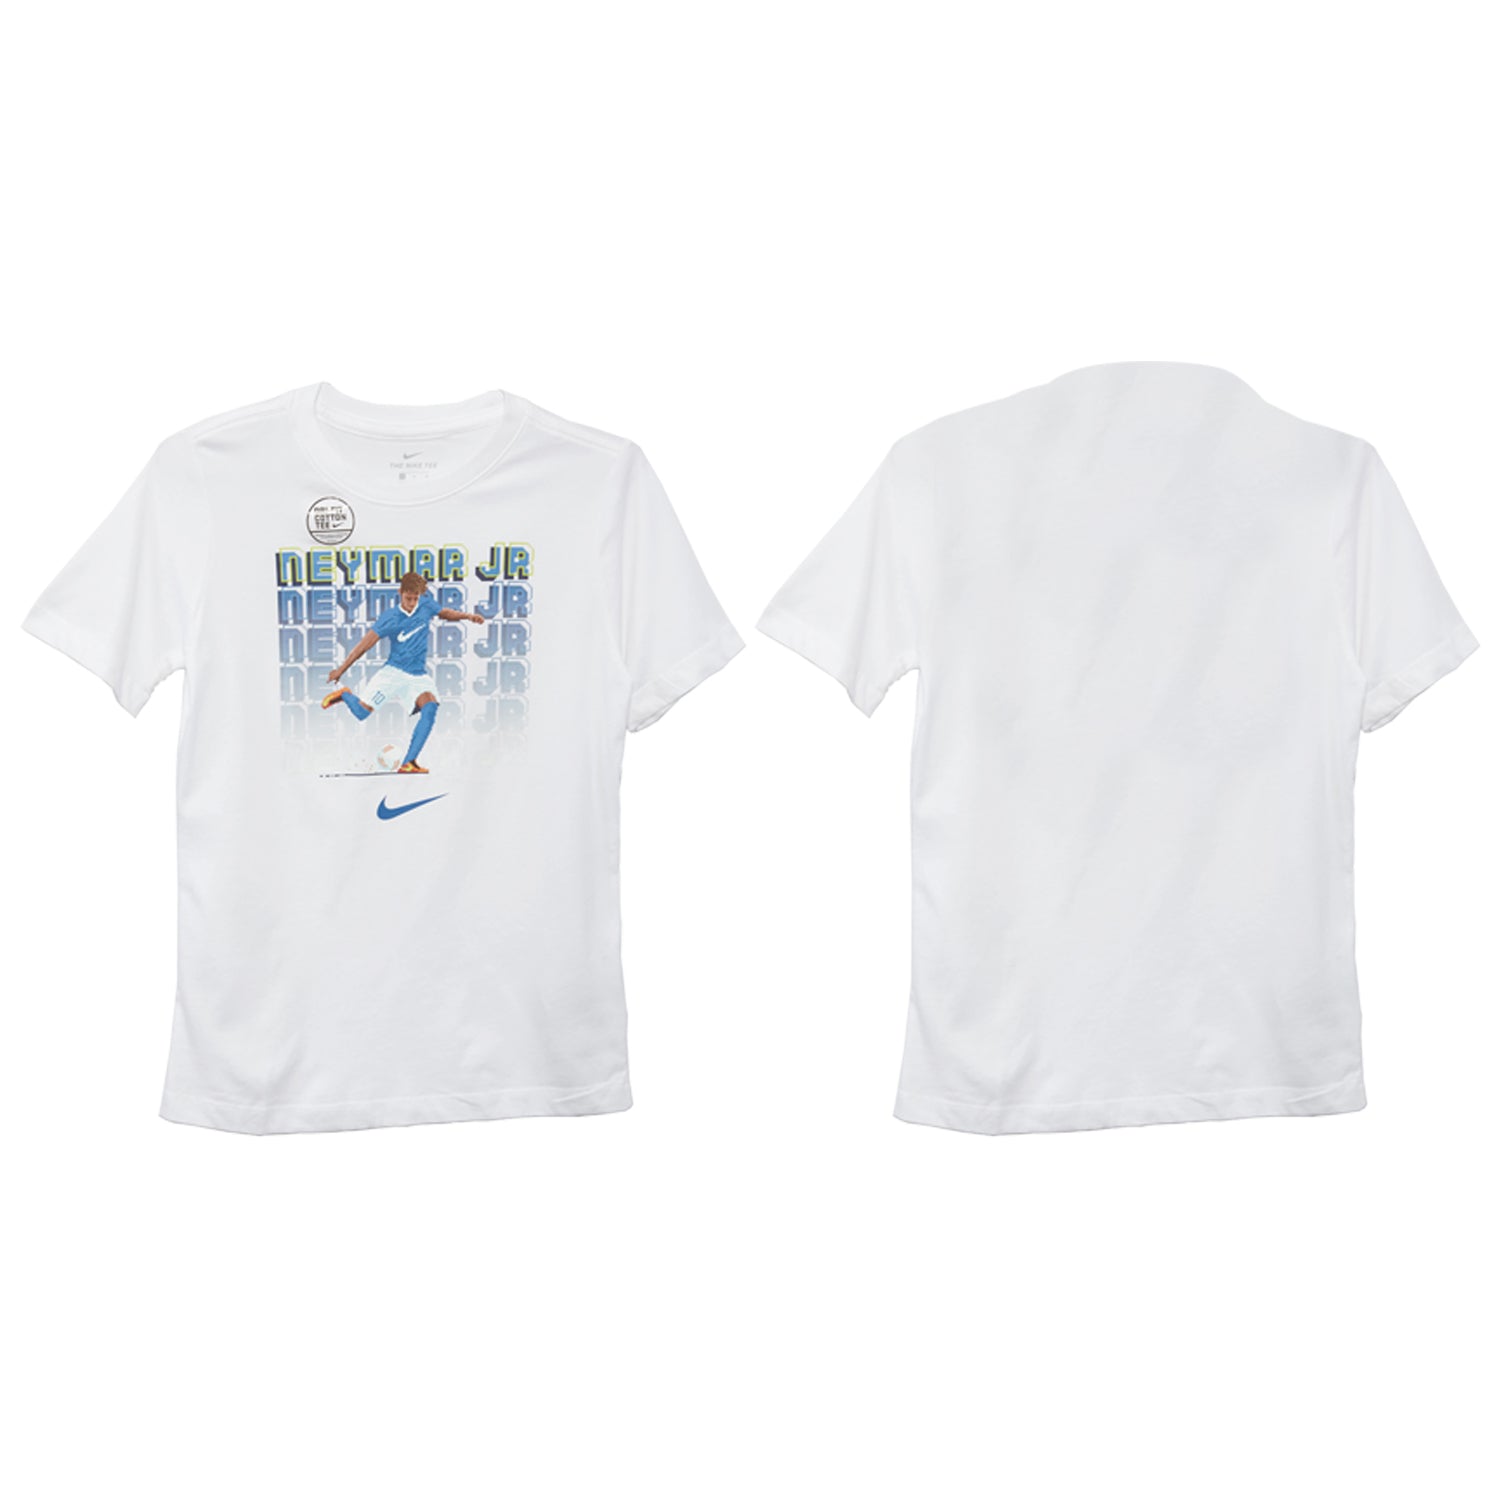 Nike Dri-fit T-shirt Neymar Big Kids Style : Bq2683-100